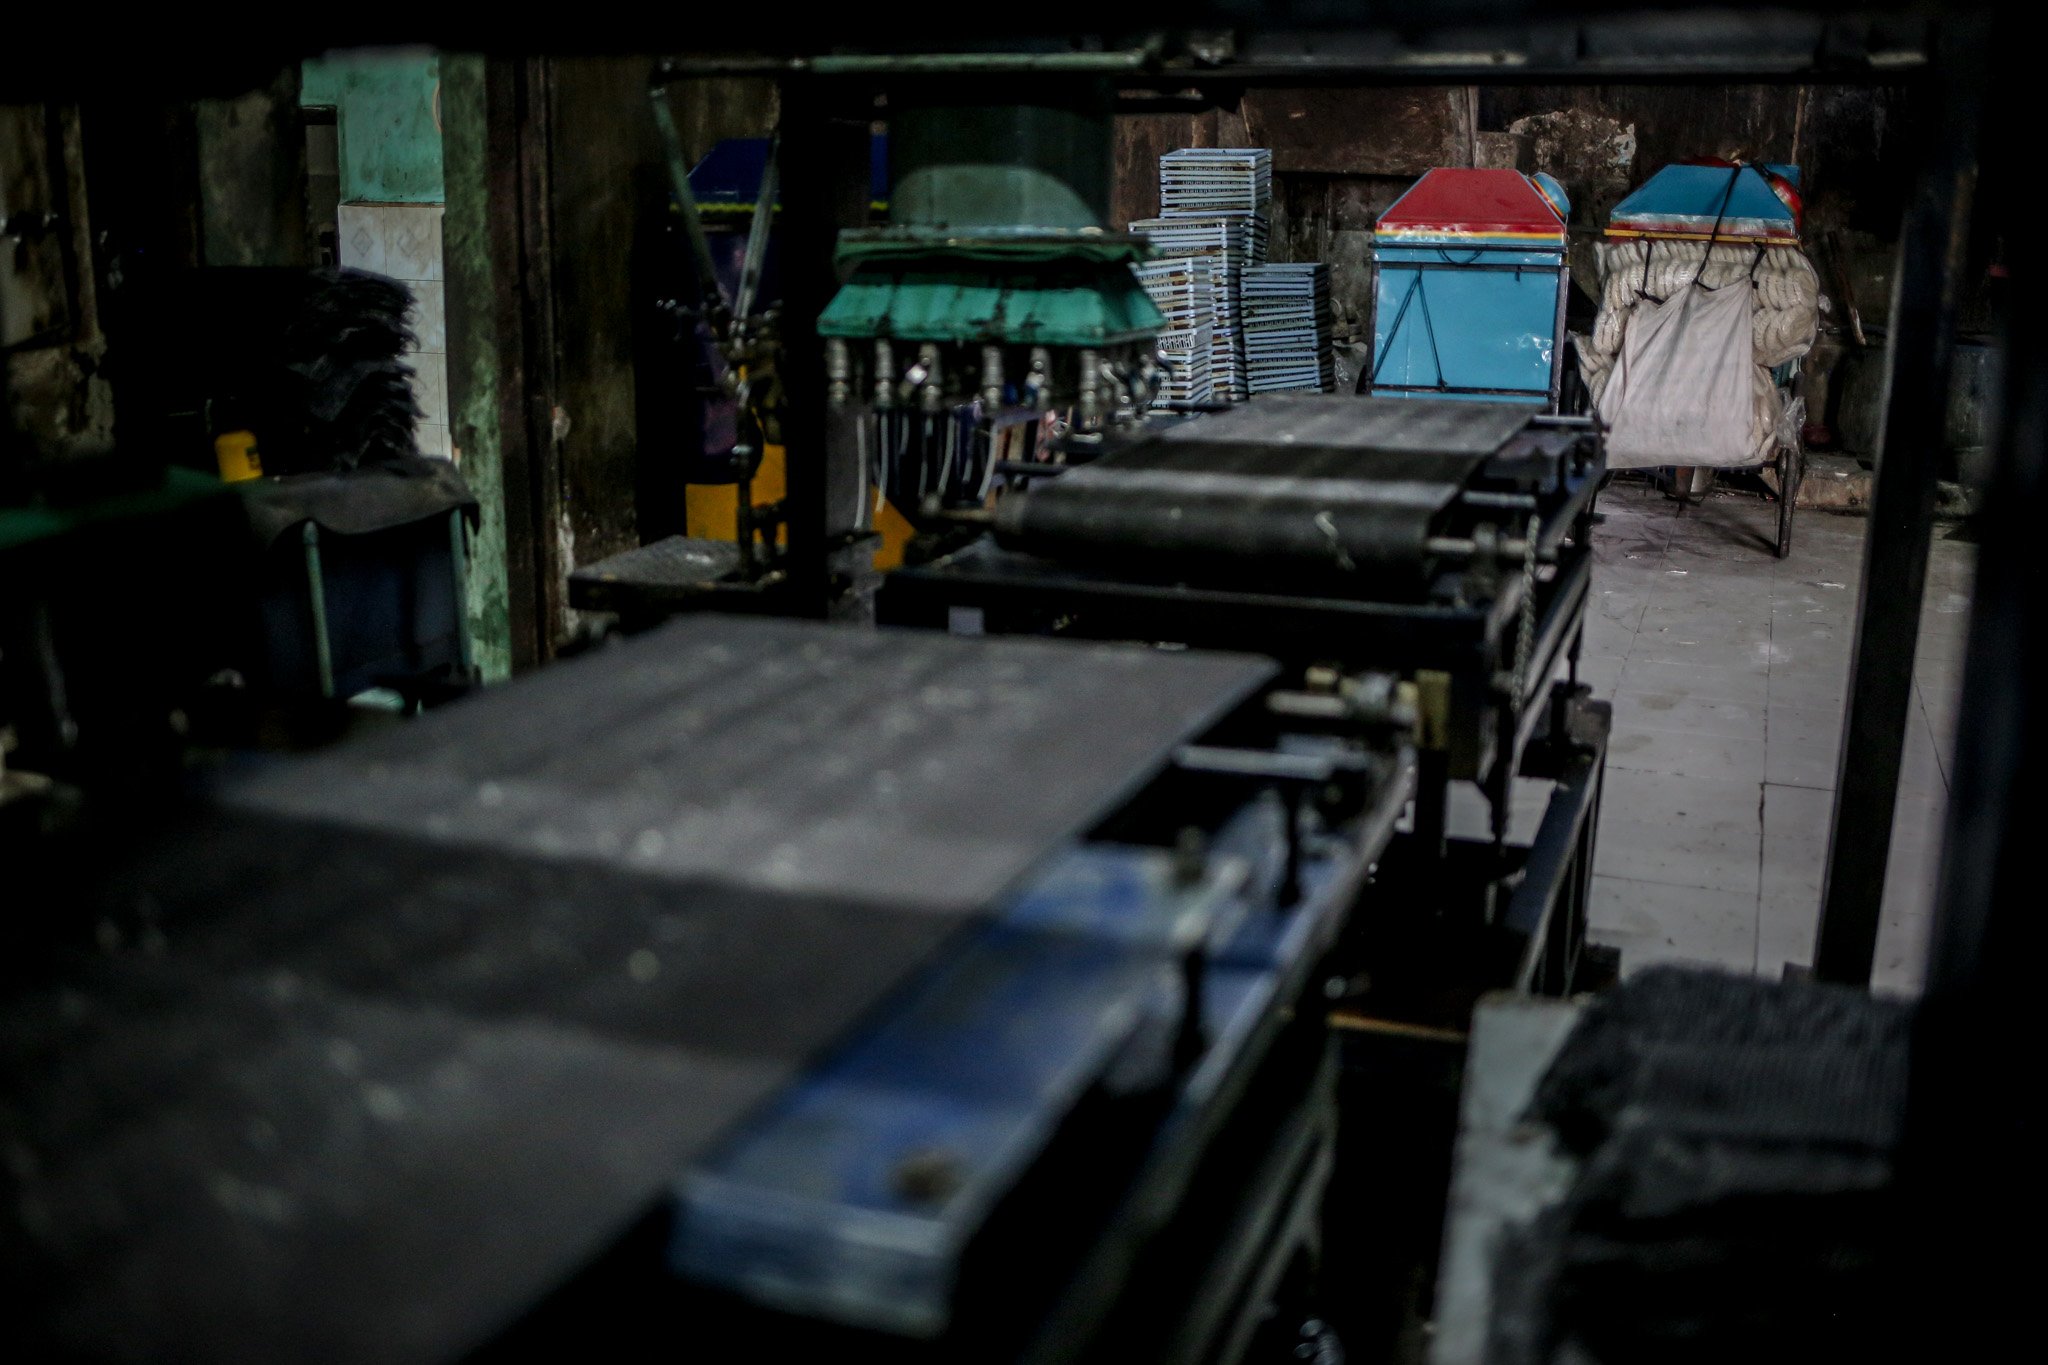 Sejumlah mesin terlihat mati karena tidak ada giat pengerjaan kerupuk di rumah produksi kerupuk Melati, Menteng Atas, Jakarta Selatan, Jumat, (23/7/2021). Semenjak penerapan Pemberlakuan Pembatasan Kegiatan Masyarakat (PPKM) Darurat rumah produksi kerupuk yang sudah berdiri sejak tahun 1960 ini alami penurunan omzet hingga 40%.